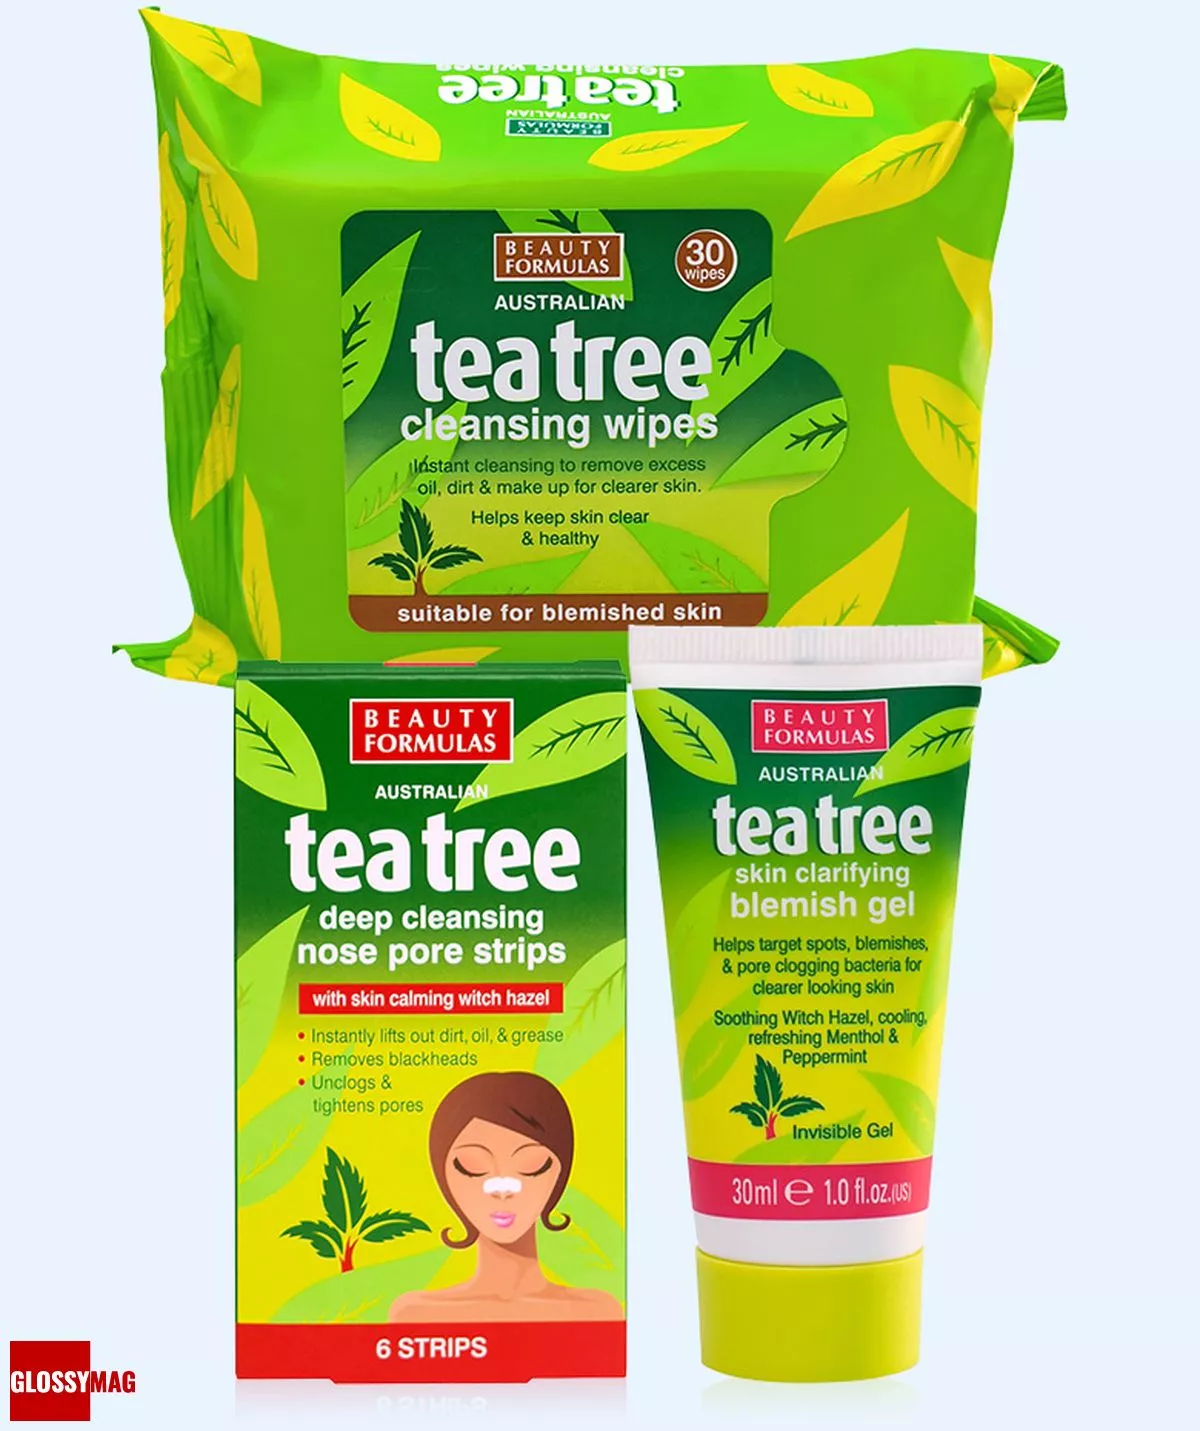 Beauty Formulas, салфетки очищающие Чайное дерево; полоски для глубокого очищения пор носа Чайное дерево; гель, устраняющий дефекты кожи Чайное дерево